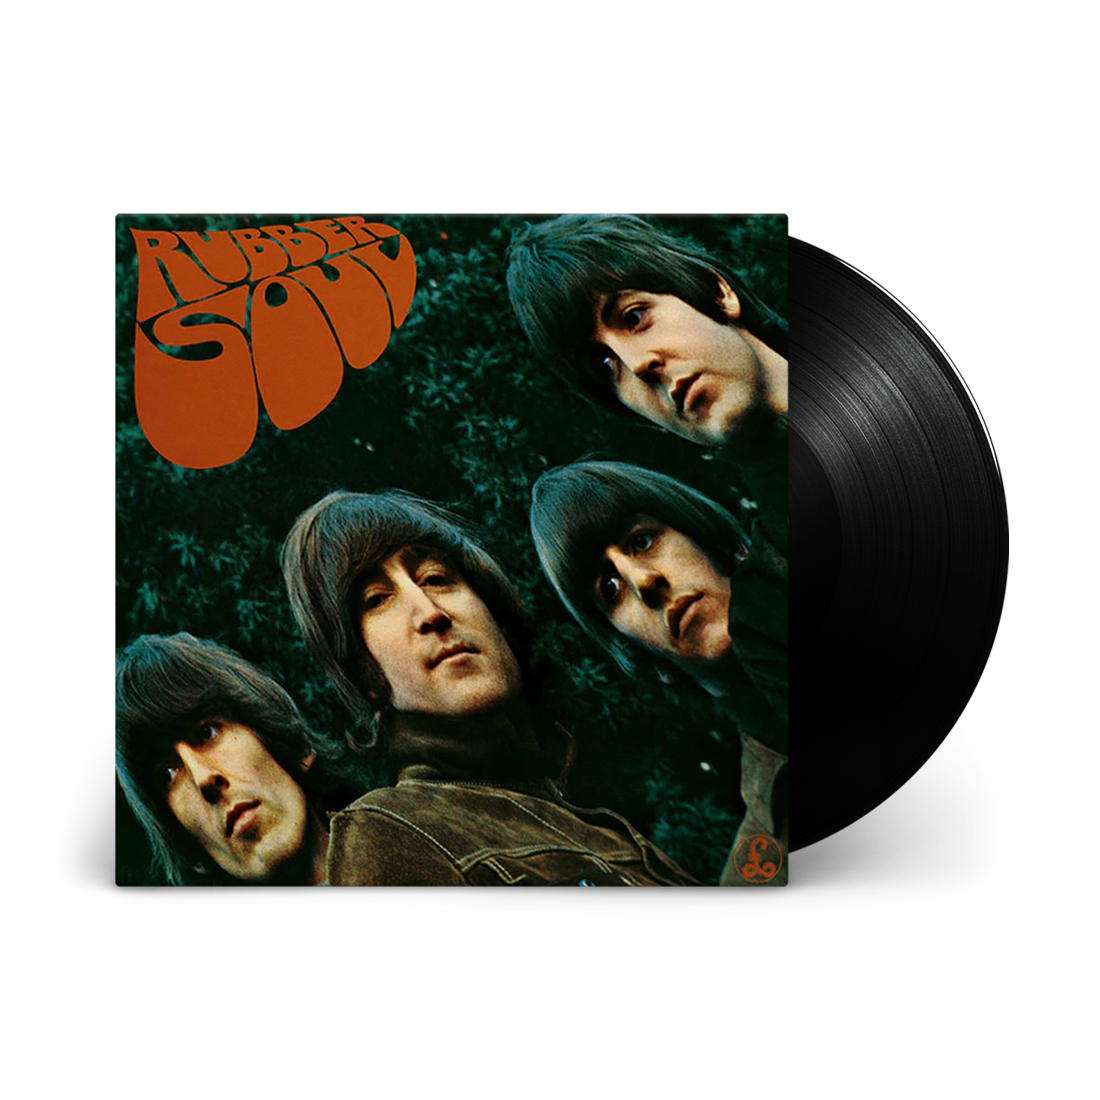 The Beatles - Rubber Soul (Stereo 180 Gram Vinyl)